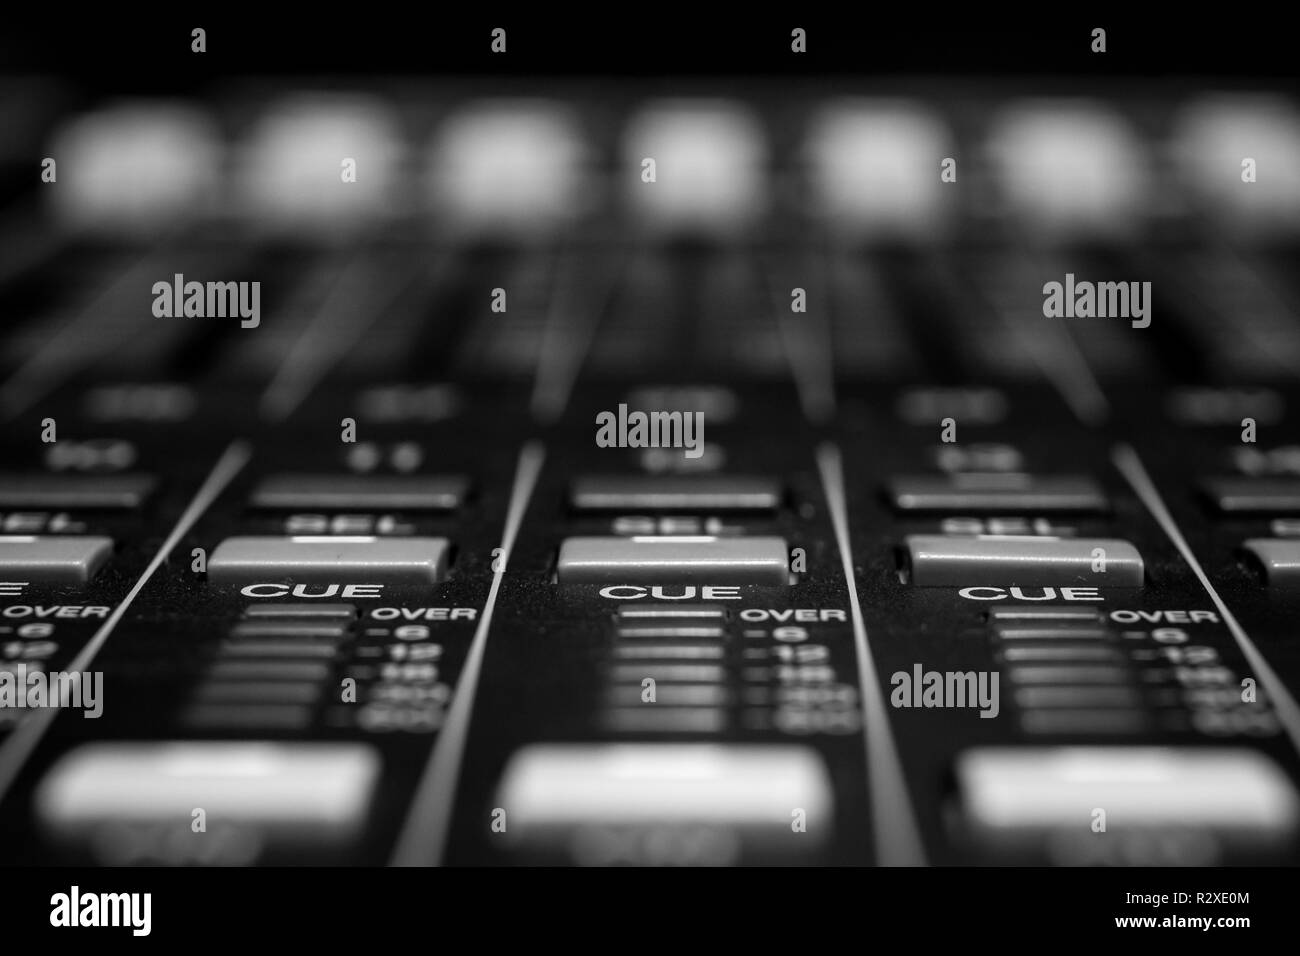 Indicateurs de signal audio professionnel sur la console de commande de mixage sonore Banque D'Images